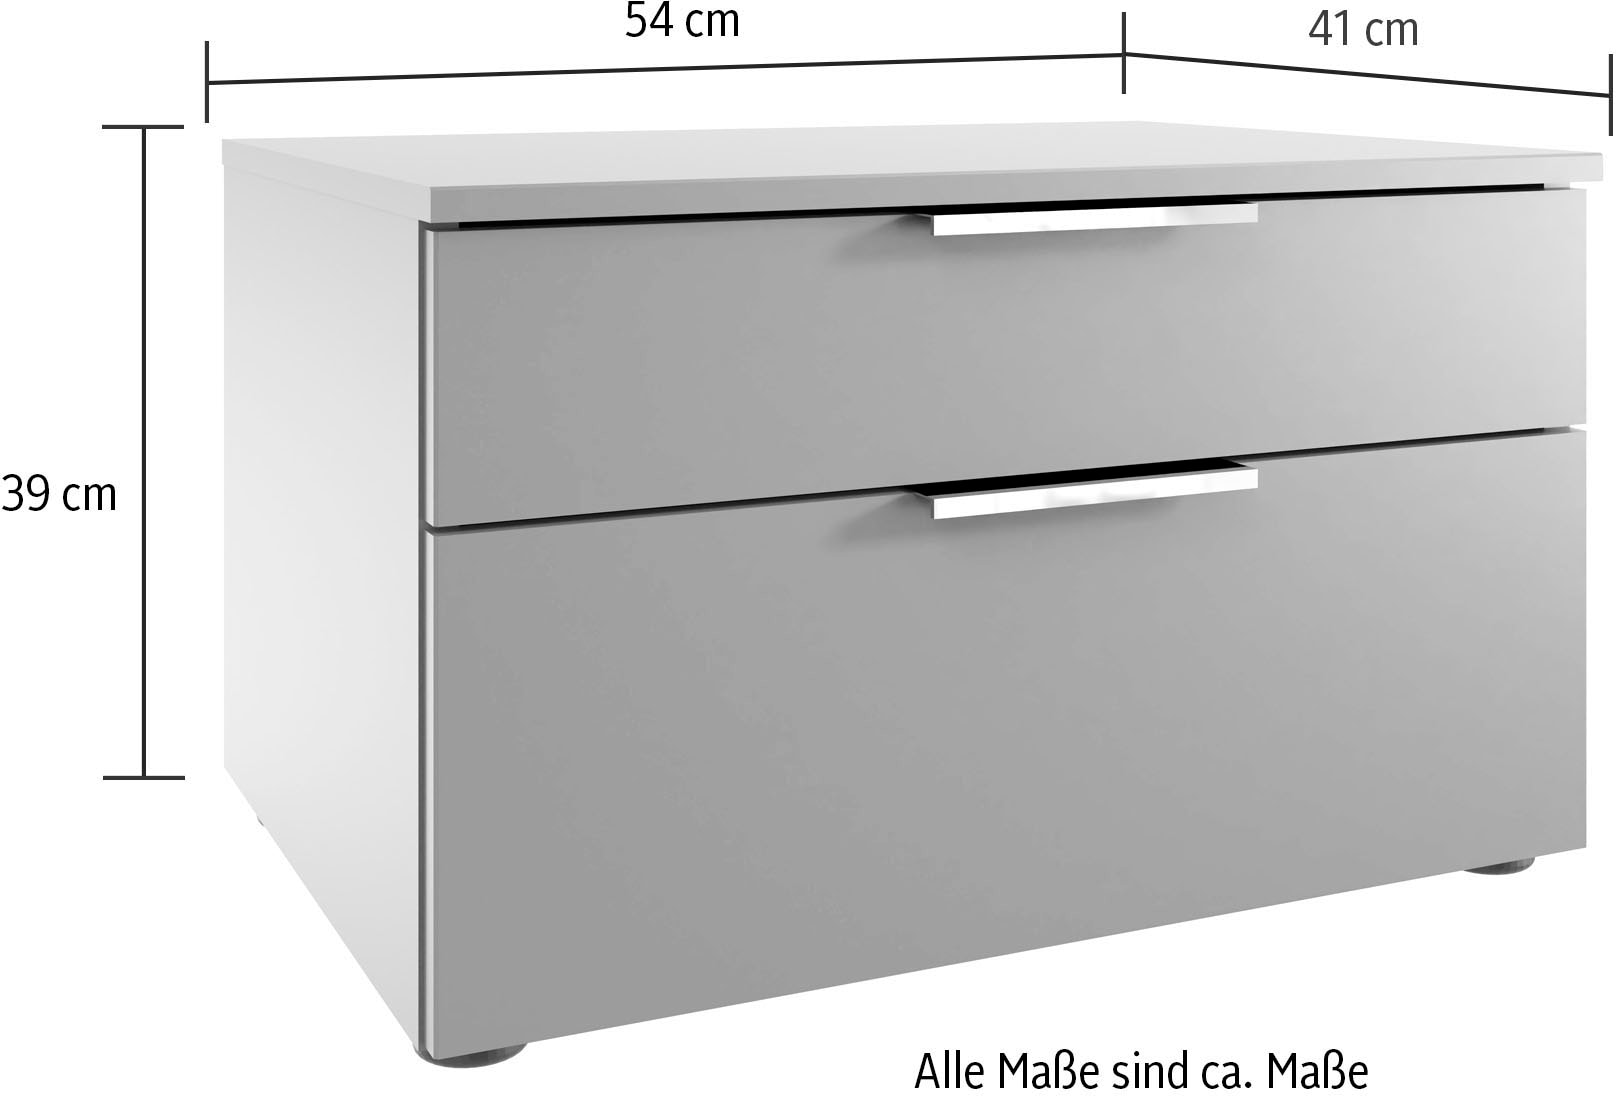 Wimex Nachtkommode »Level by fresh to go«, 2 Schubladen mit soft-close Funktion, 54cm breit, 39cm hoch